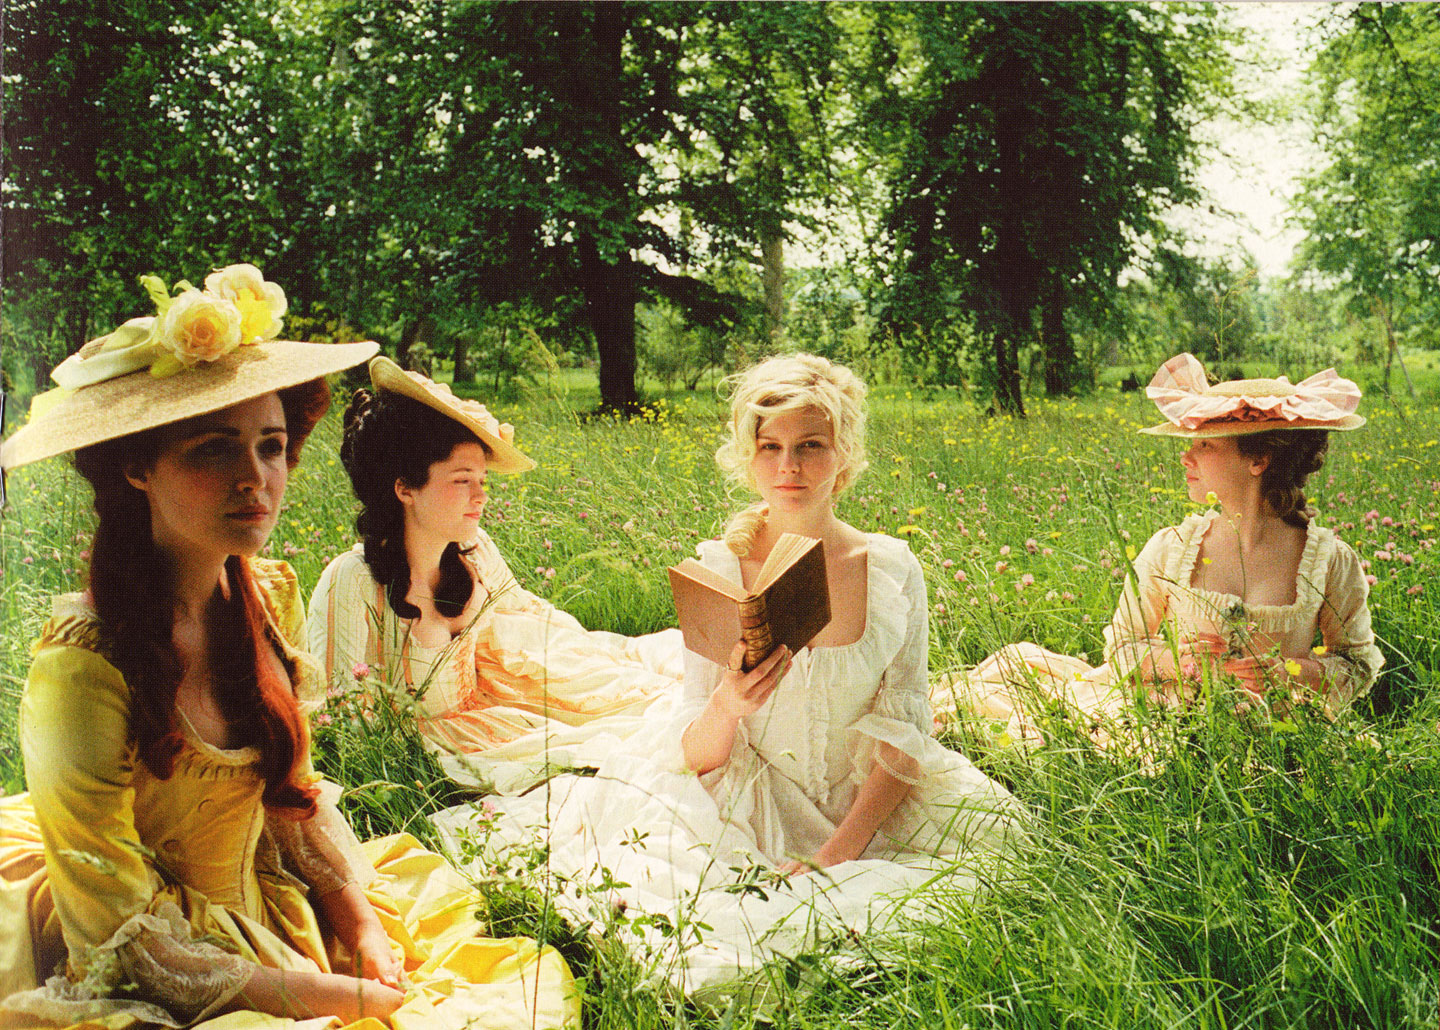 thời trang phim marie antoinette 4 nhân vật mặc đầm trắng vàng ngồi trên bãi cỏ